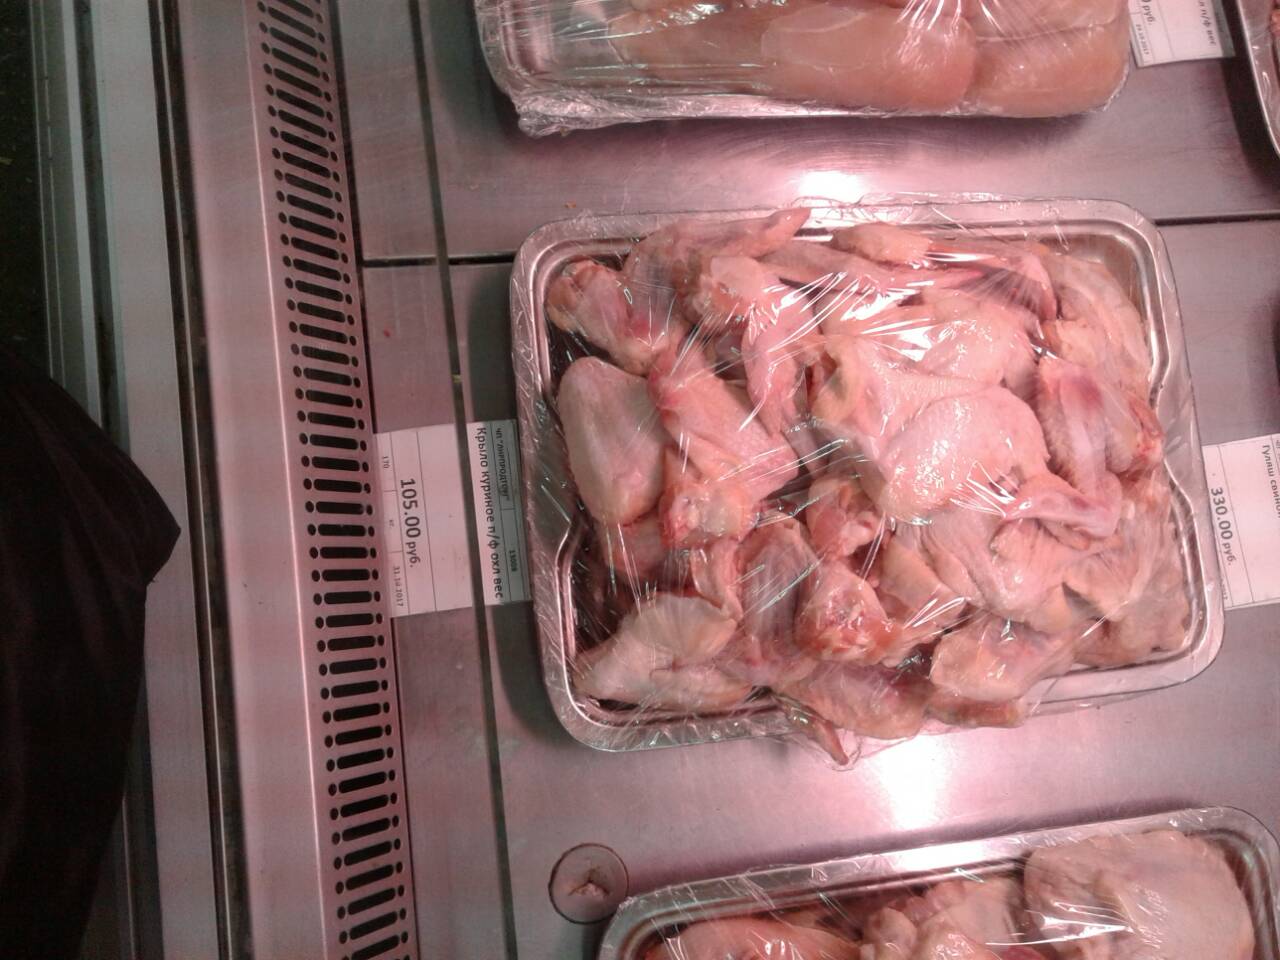 курица в луганске стоимость